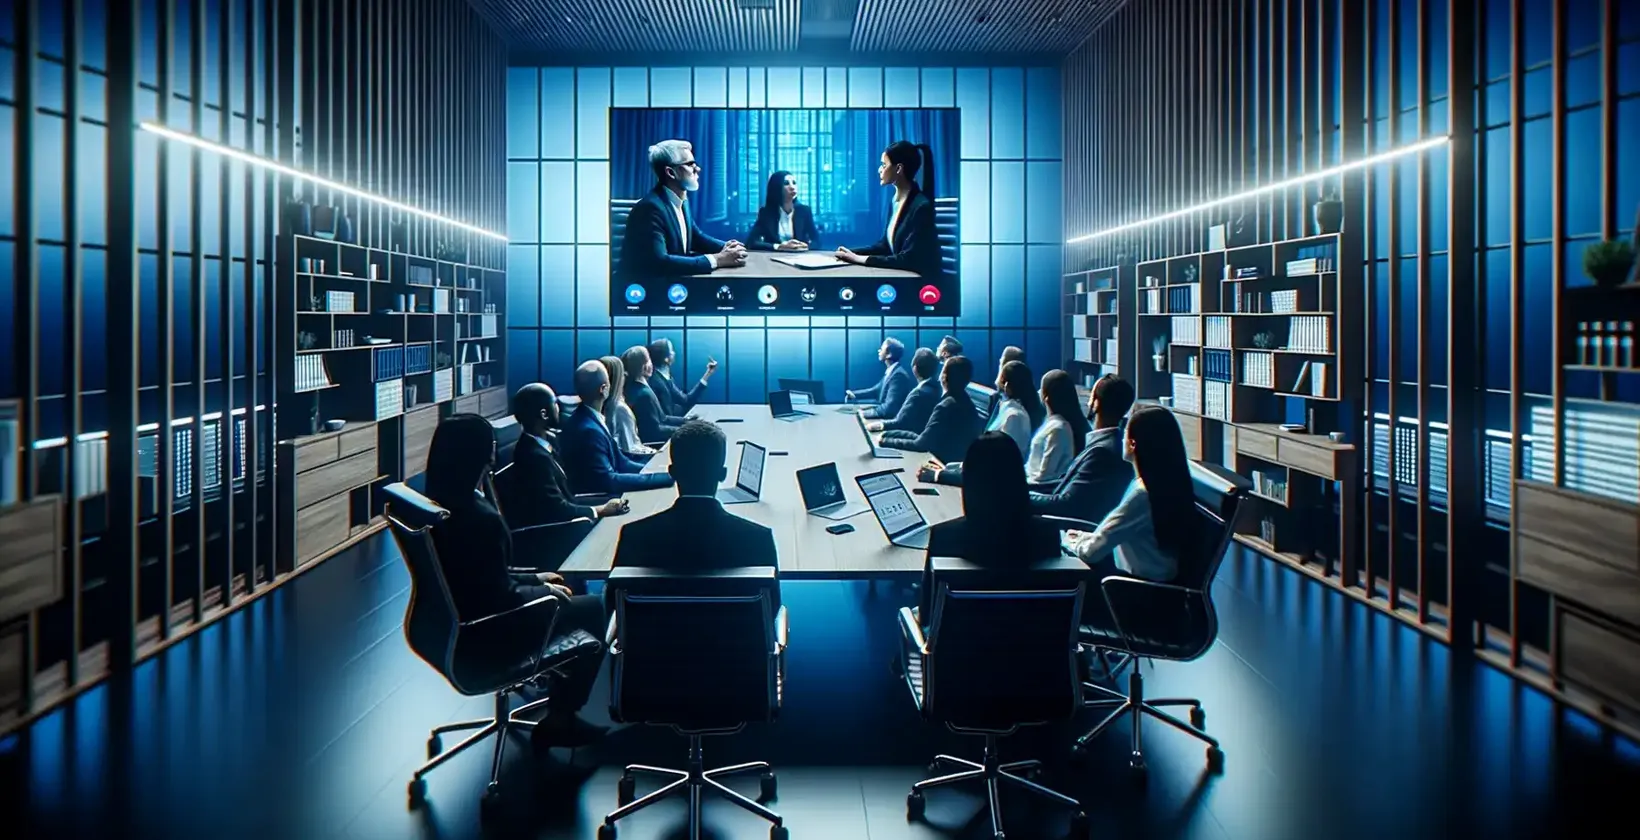 Transkribering av möte observeras när yrkesverksamma i ett blåbelyst rum tittar på ett videosamtal med tre personer.